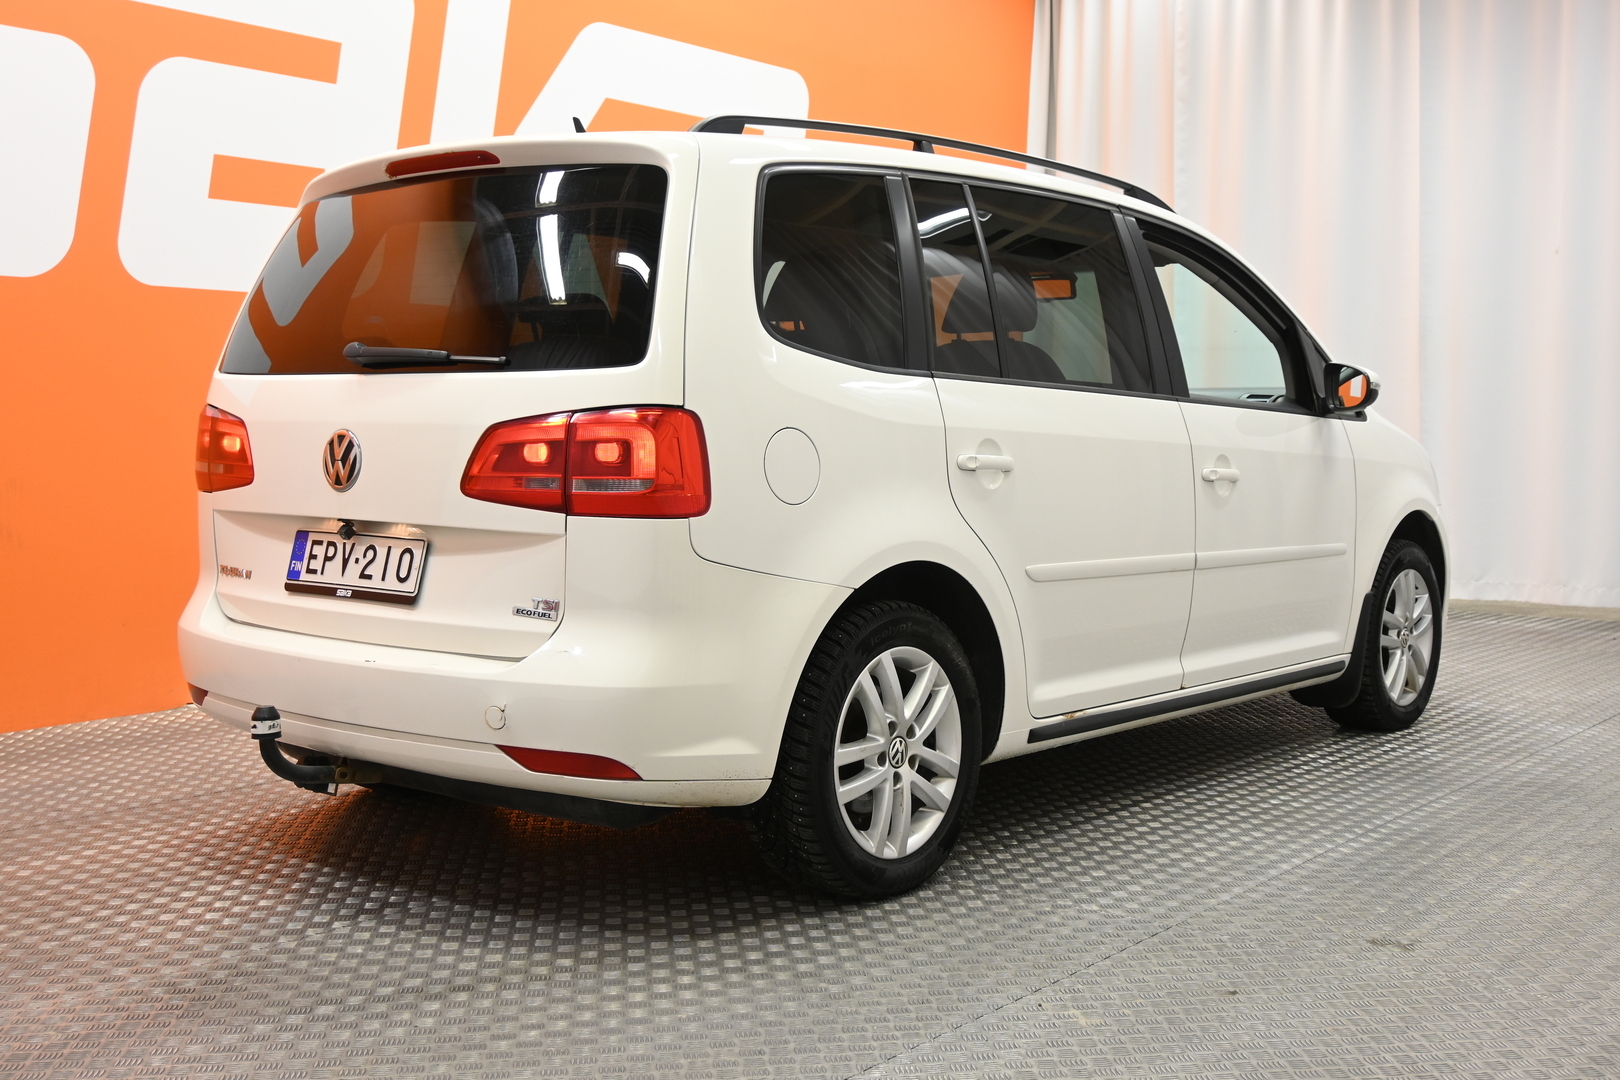 Valkoinen Tila-auto, Volkswagen Touran – EPV-210